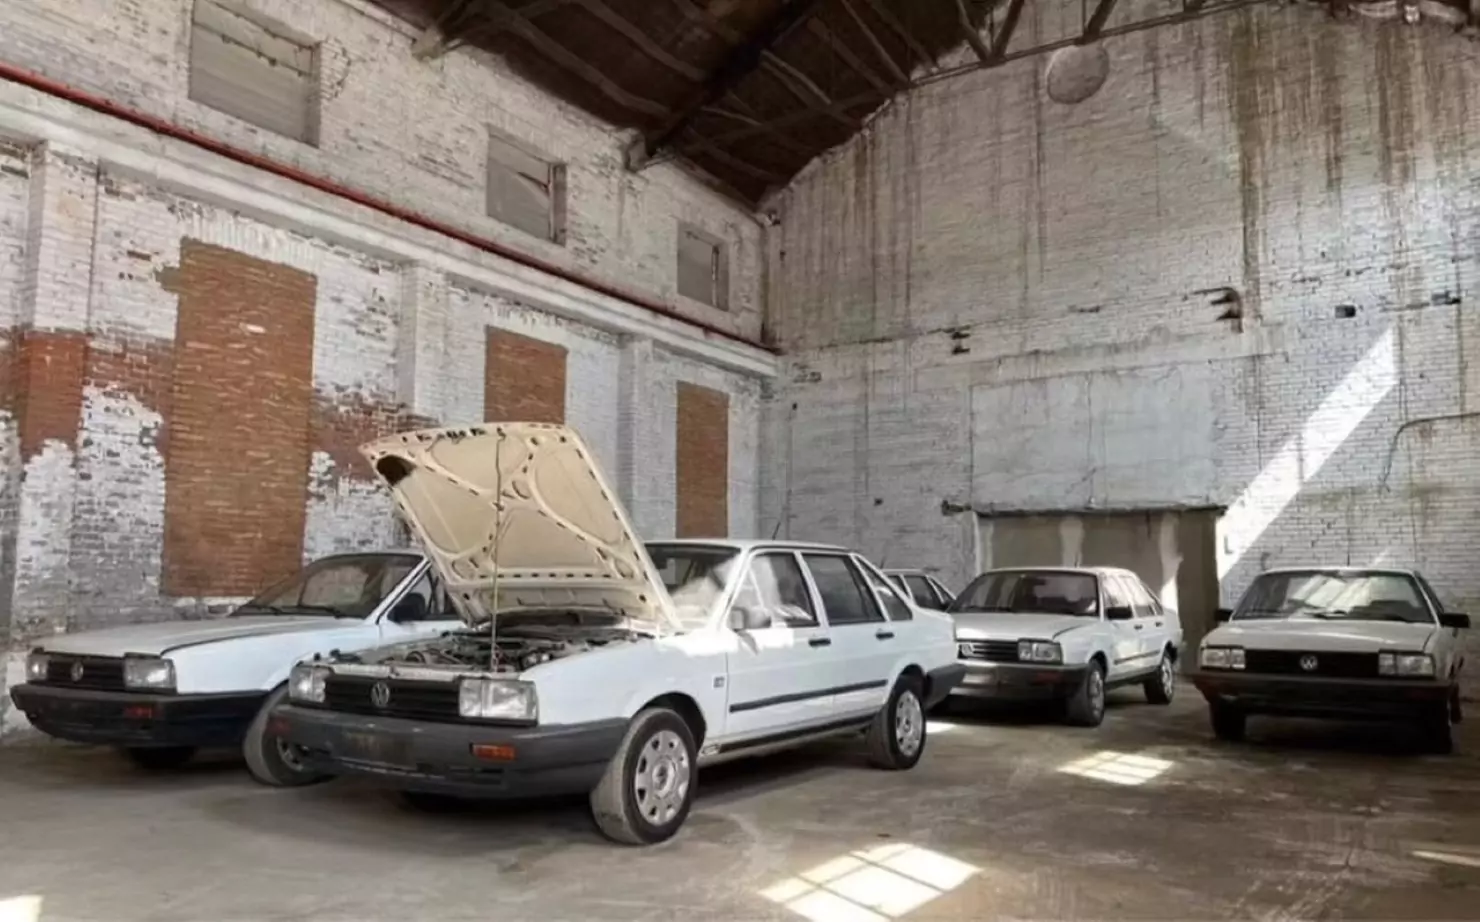 Coleção de Volkswagen Santana 0km / Foto: Han Chung Classics